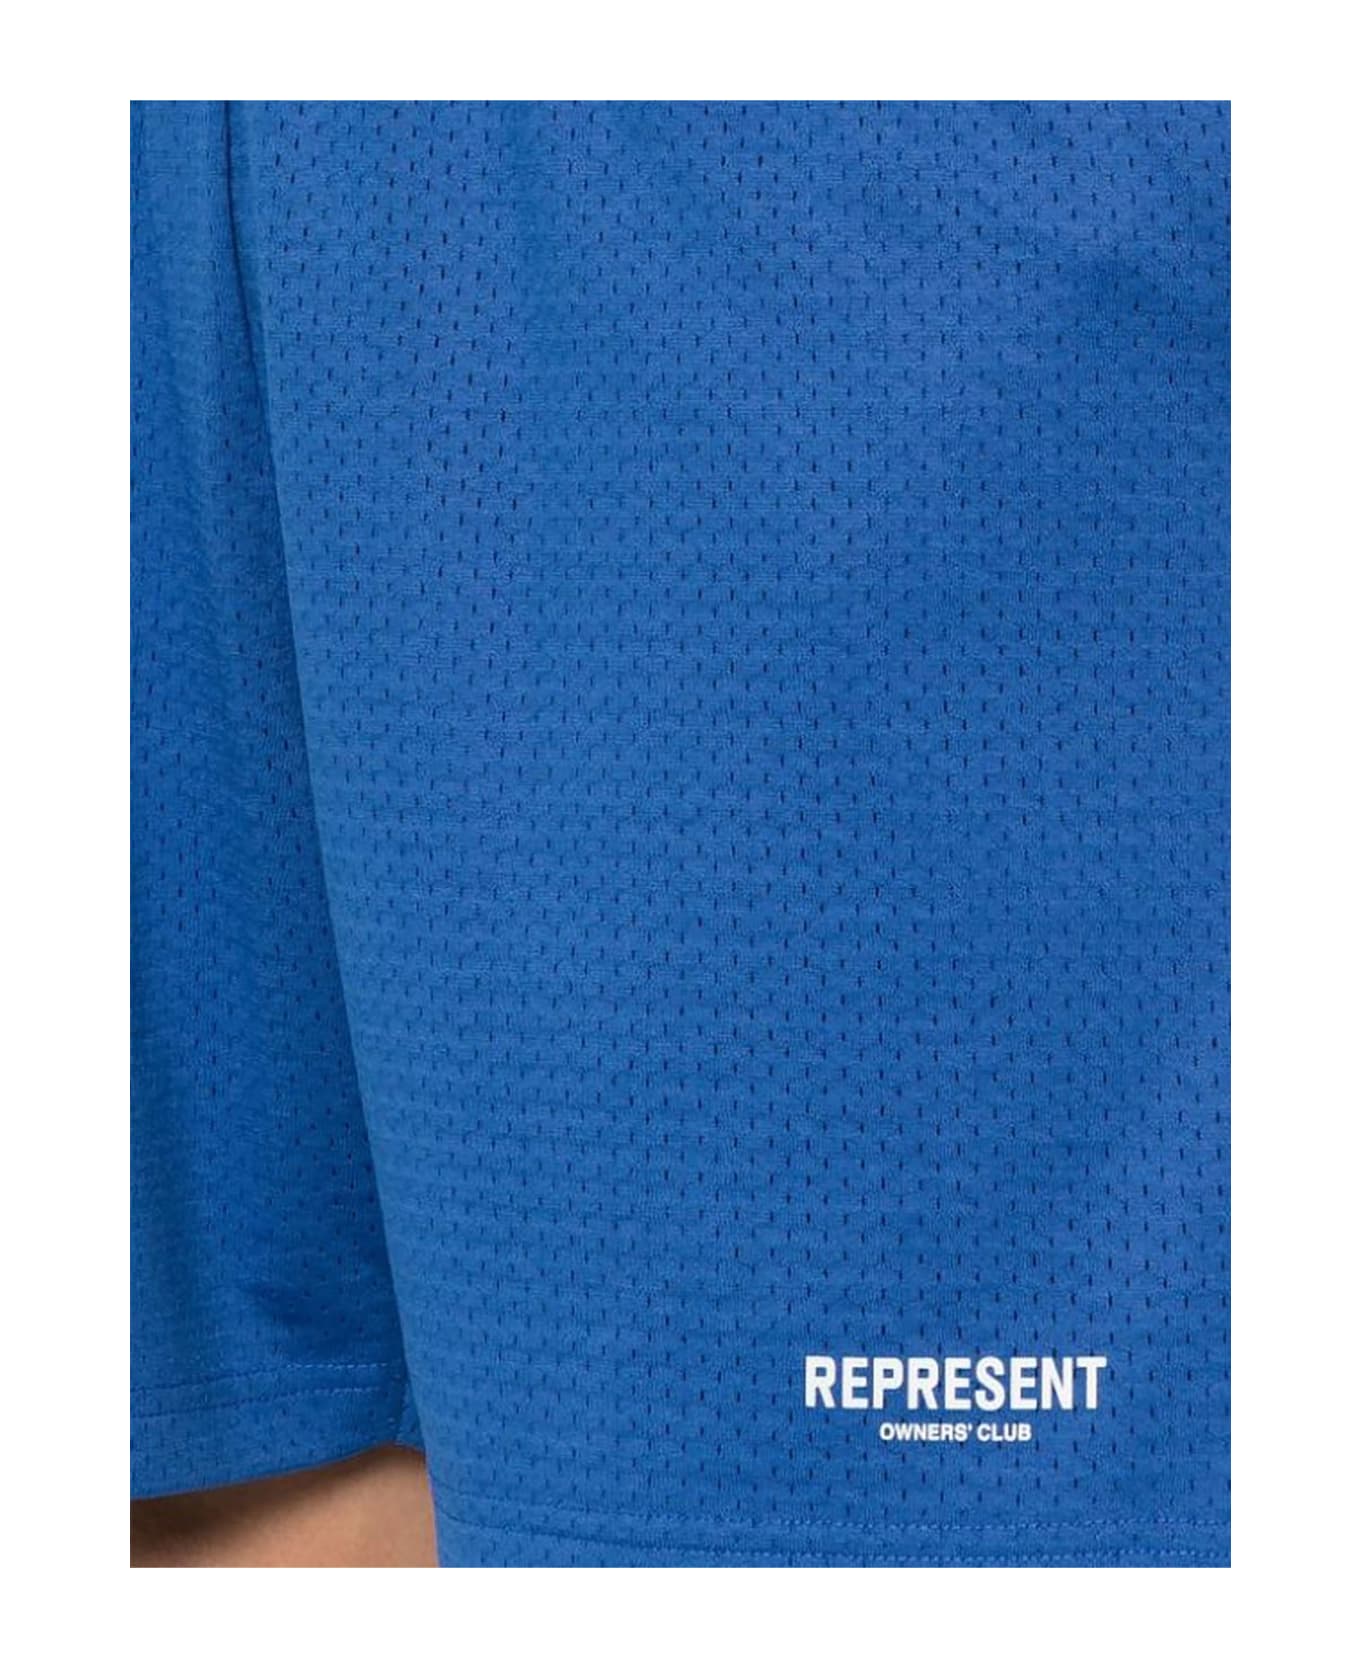 REPRESENT Shorts Blue - Blue